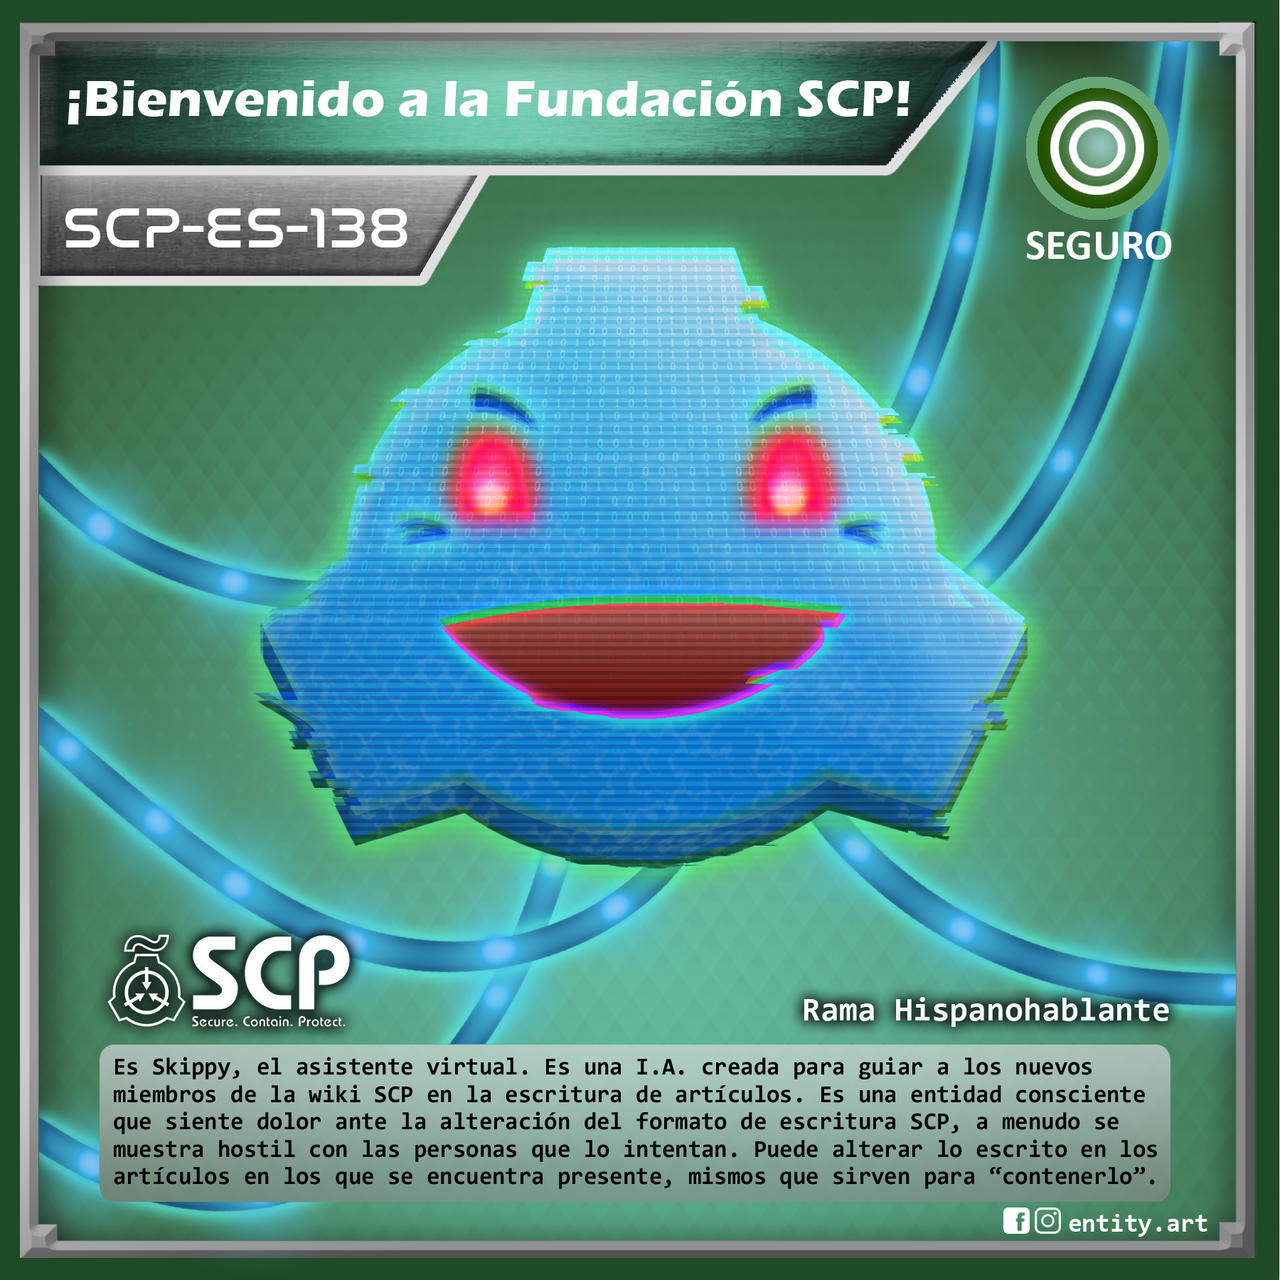 SCP-3000, Wiki La Fundación SCP